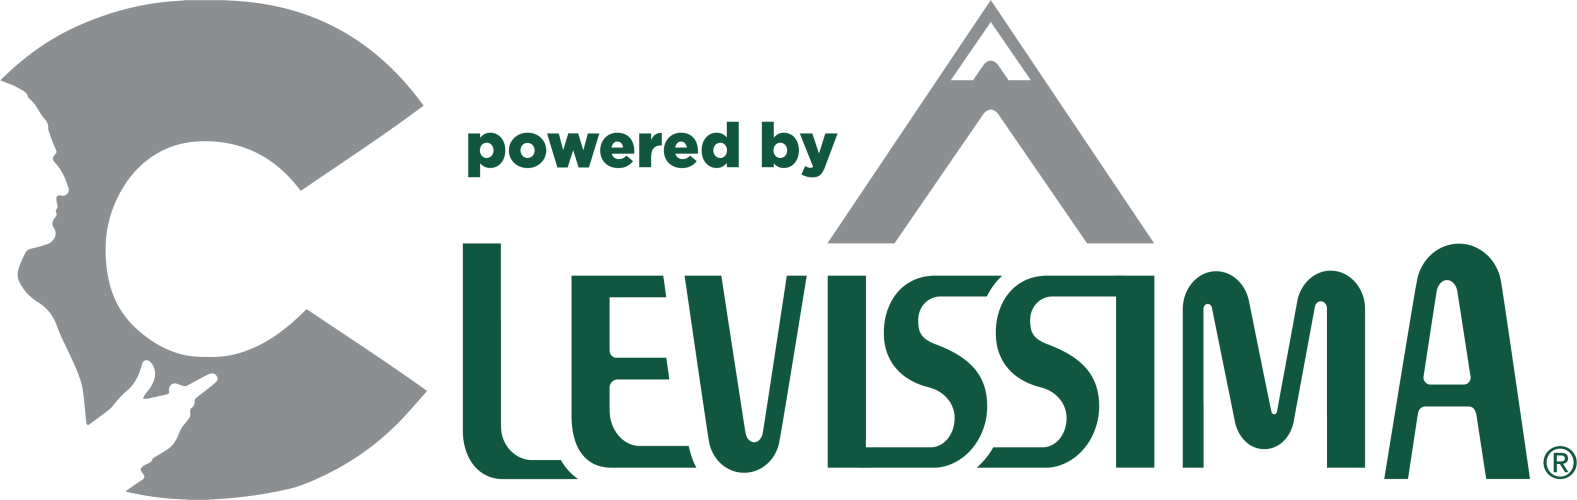 c&levissima-logo